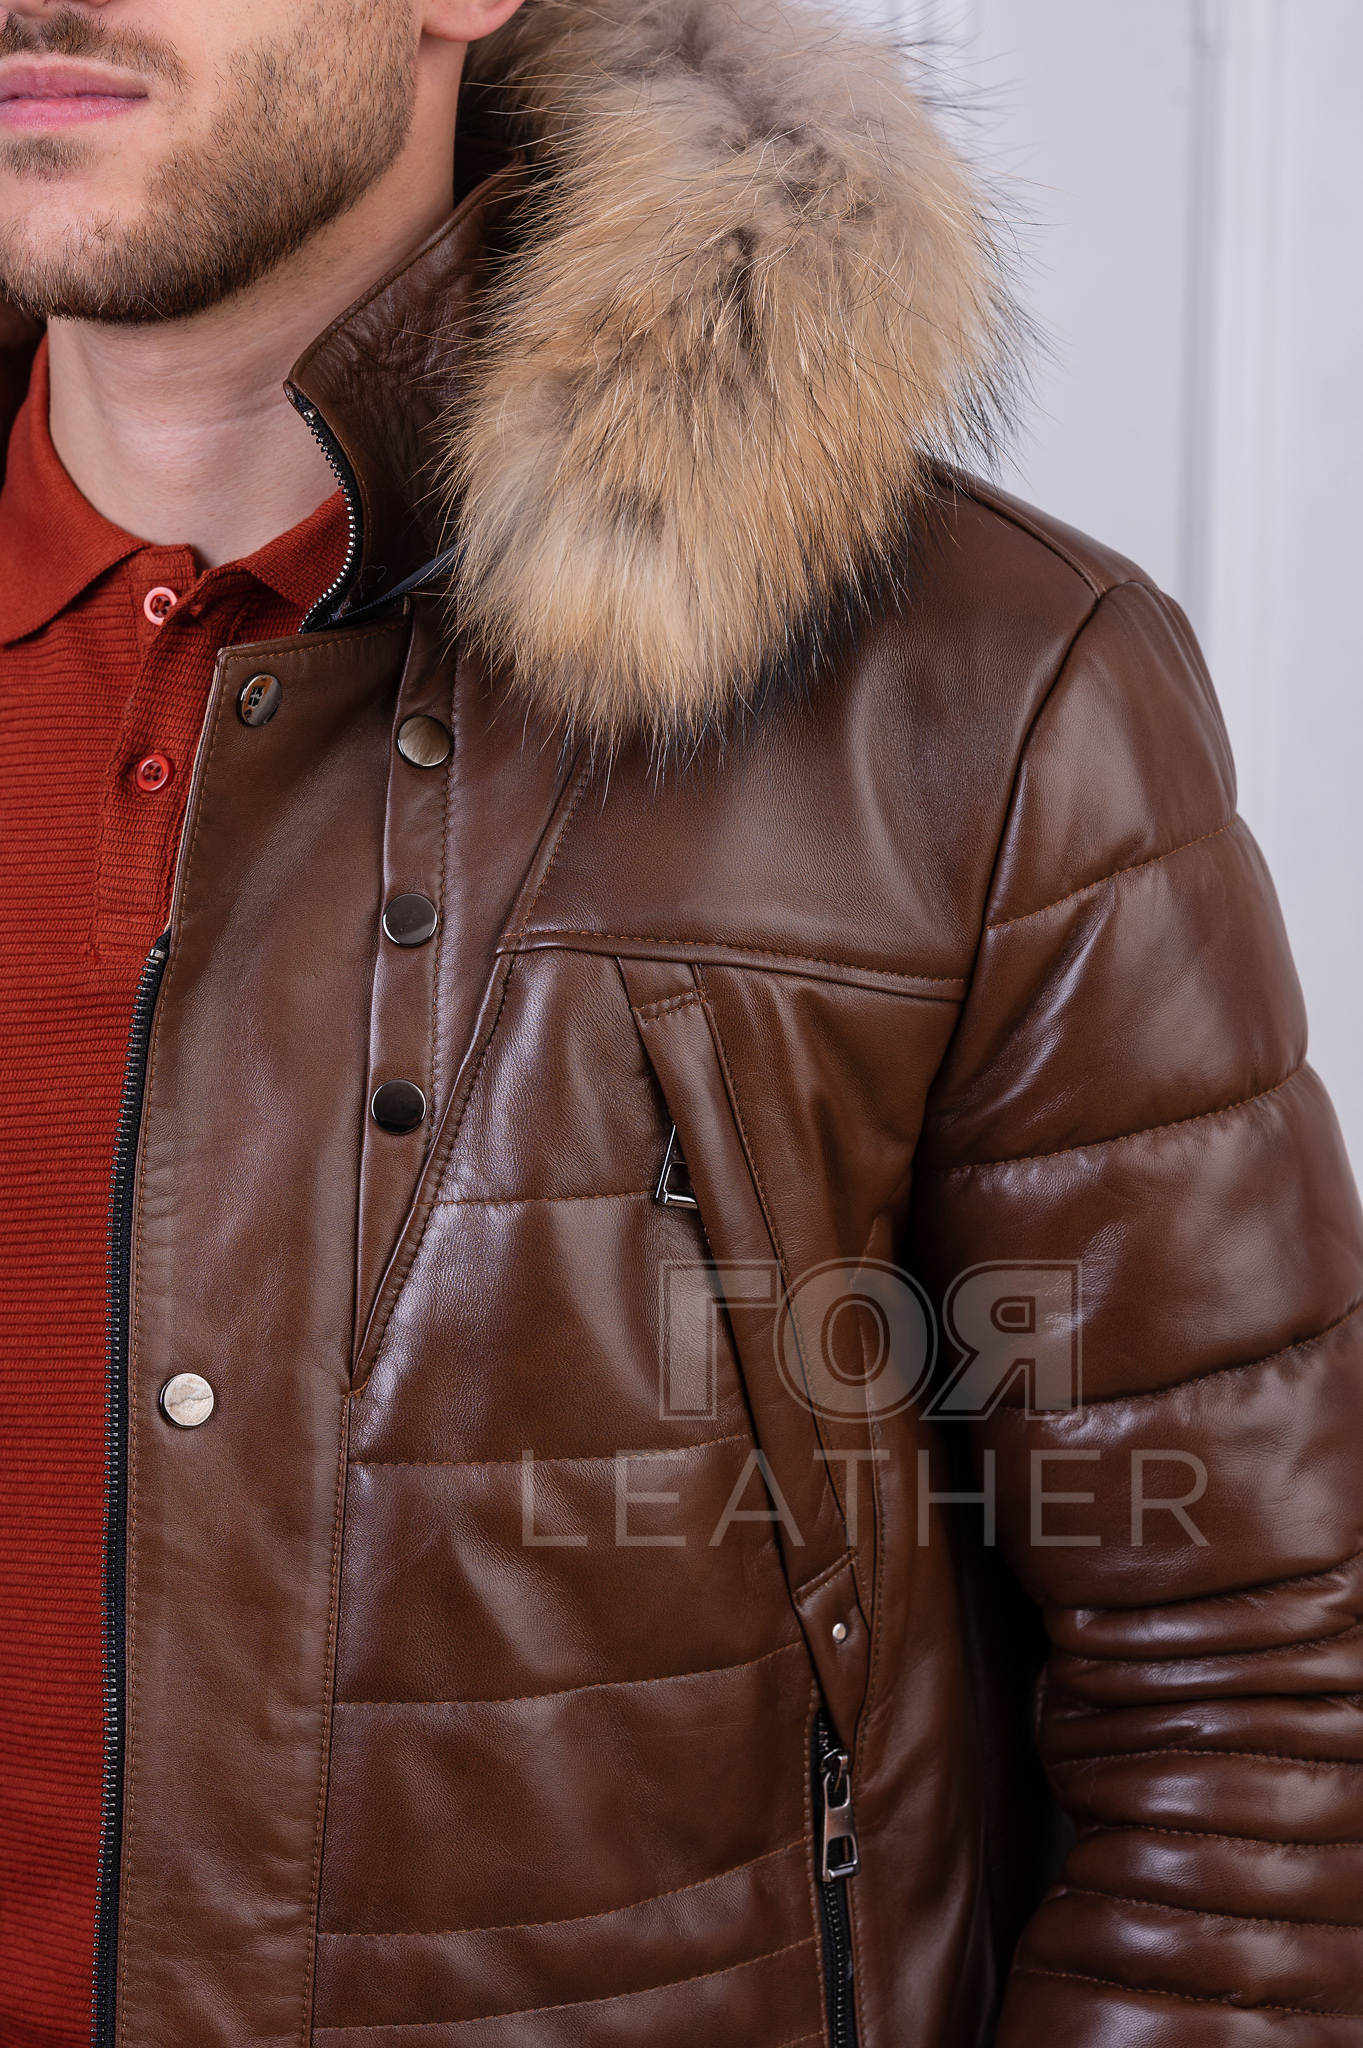 Мъжко кожено яке с качулка от ГОЯ Leather. Нов модел зимно кожено яке с подвижна качулка и гарнитура натурален енот. Моделът е тип парка, ватирана с термовата. Оригинален камел цвят. Лека и топла дреха за зимния сезон. 100% естествена кожа.